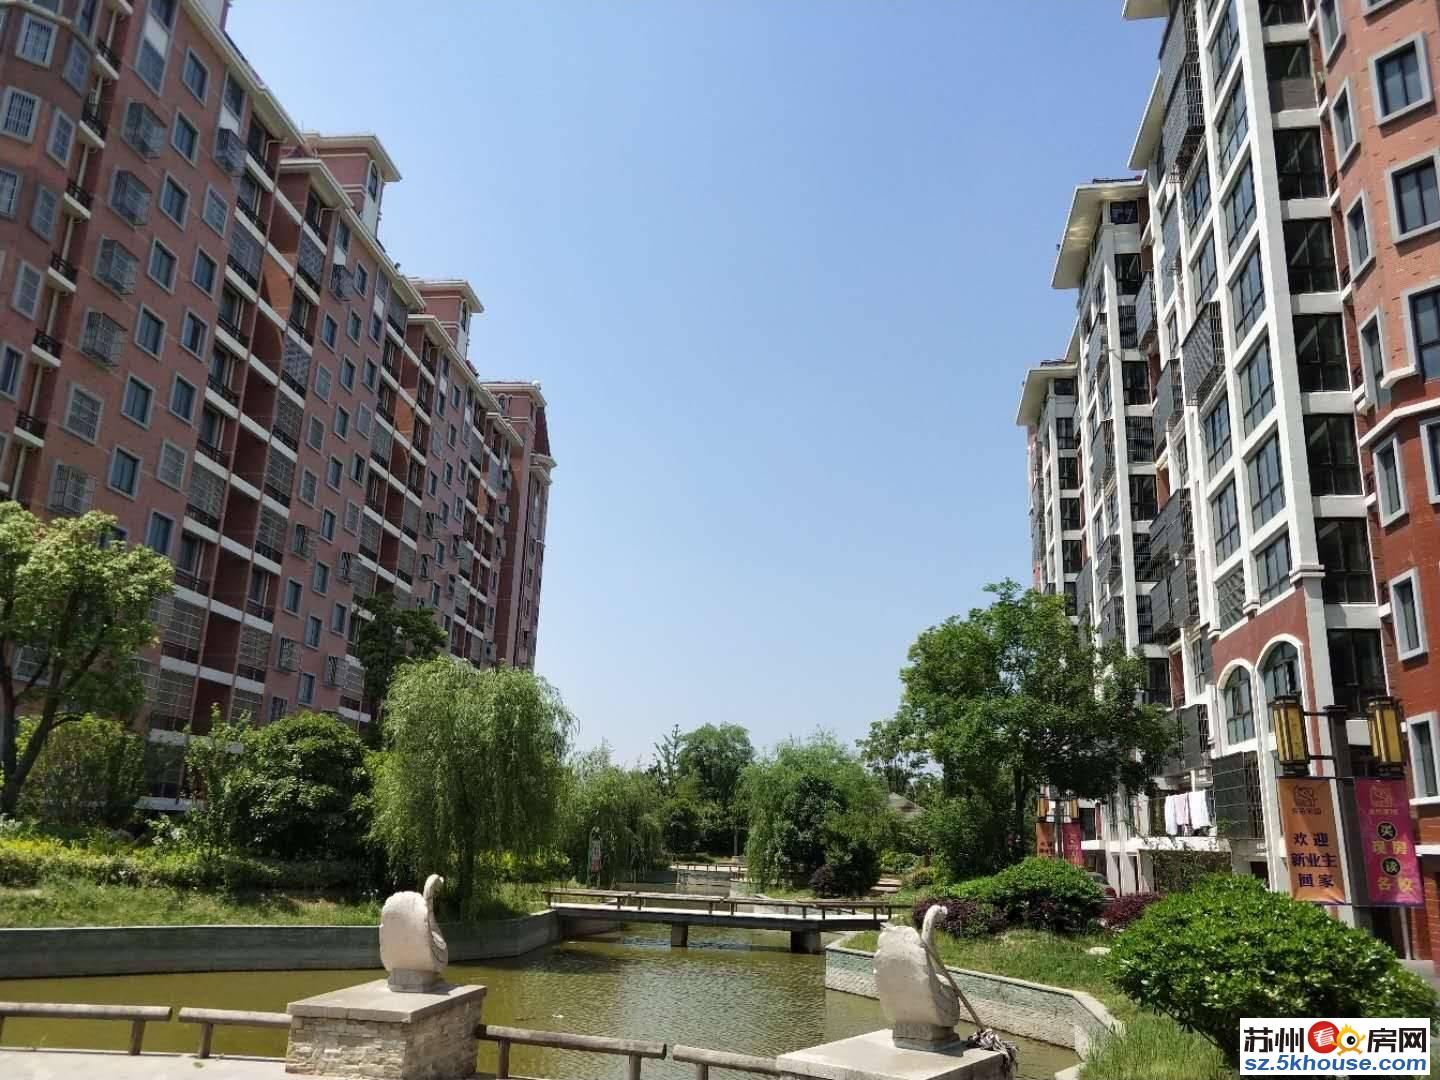 金星花园 首付20万 江苏省内重点学 区房 法式园林建筑风格